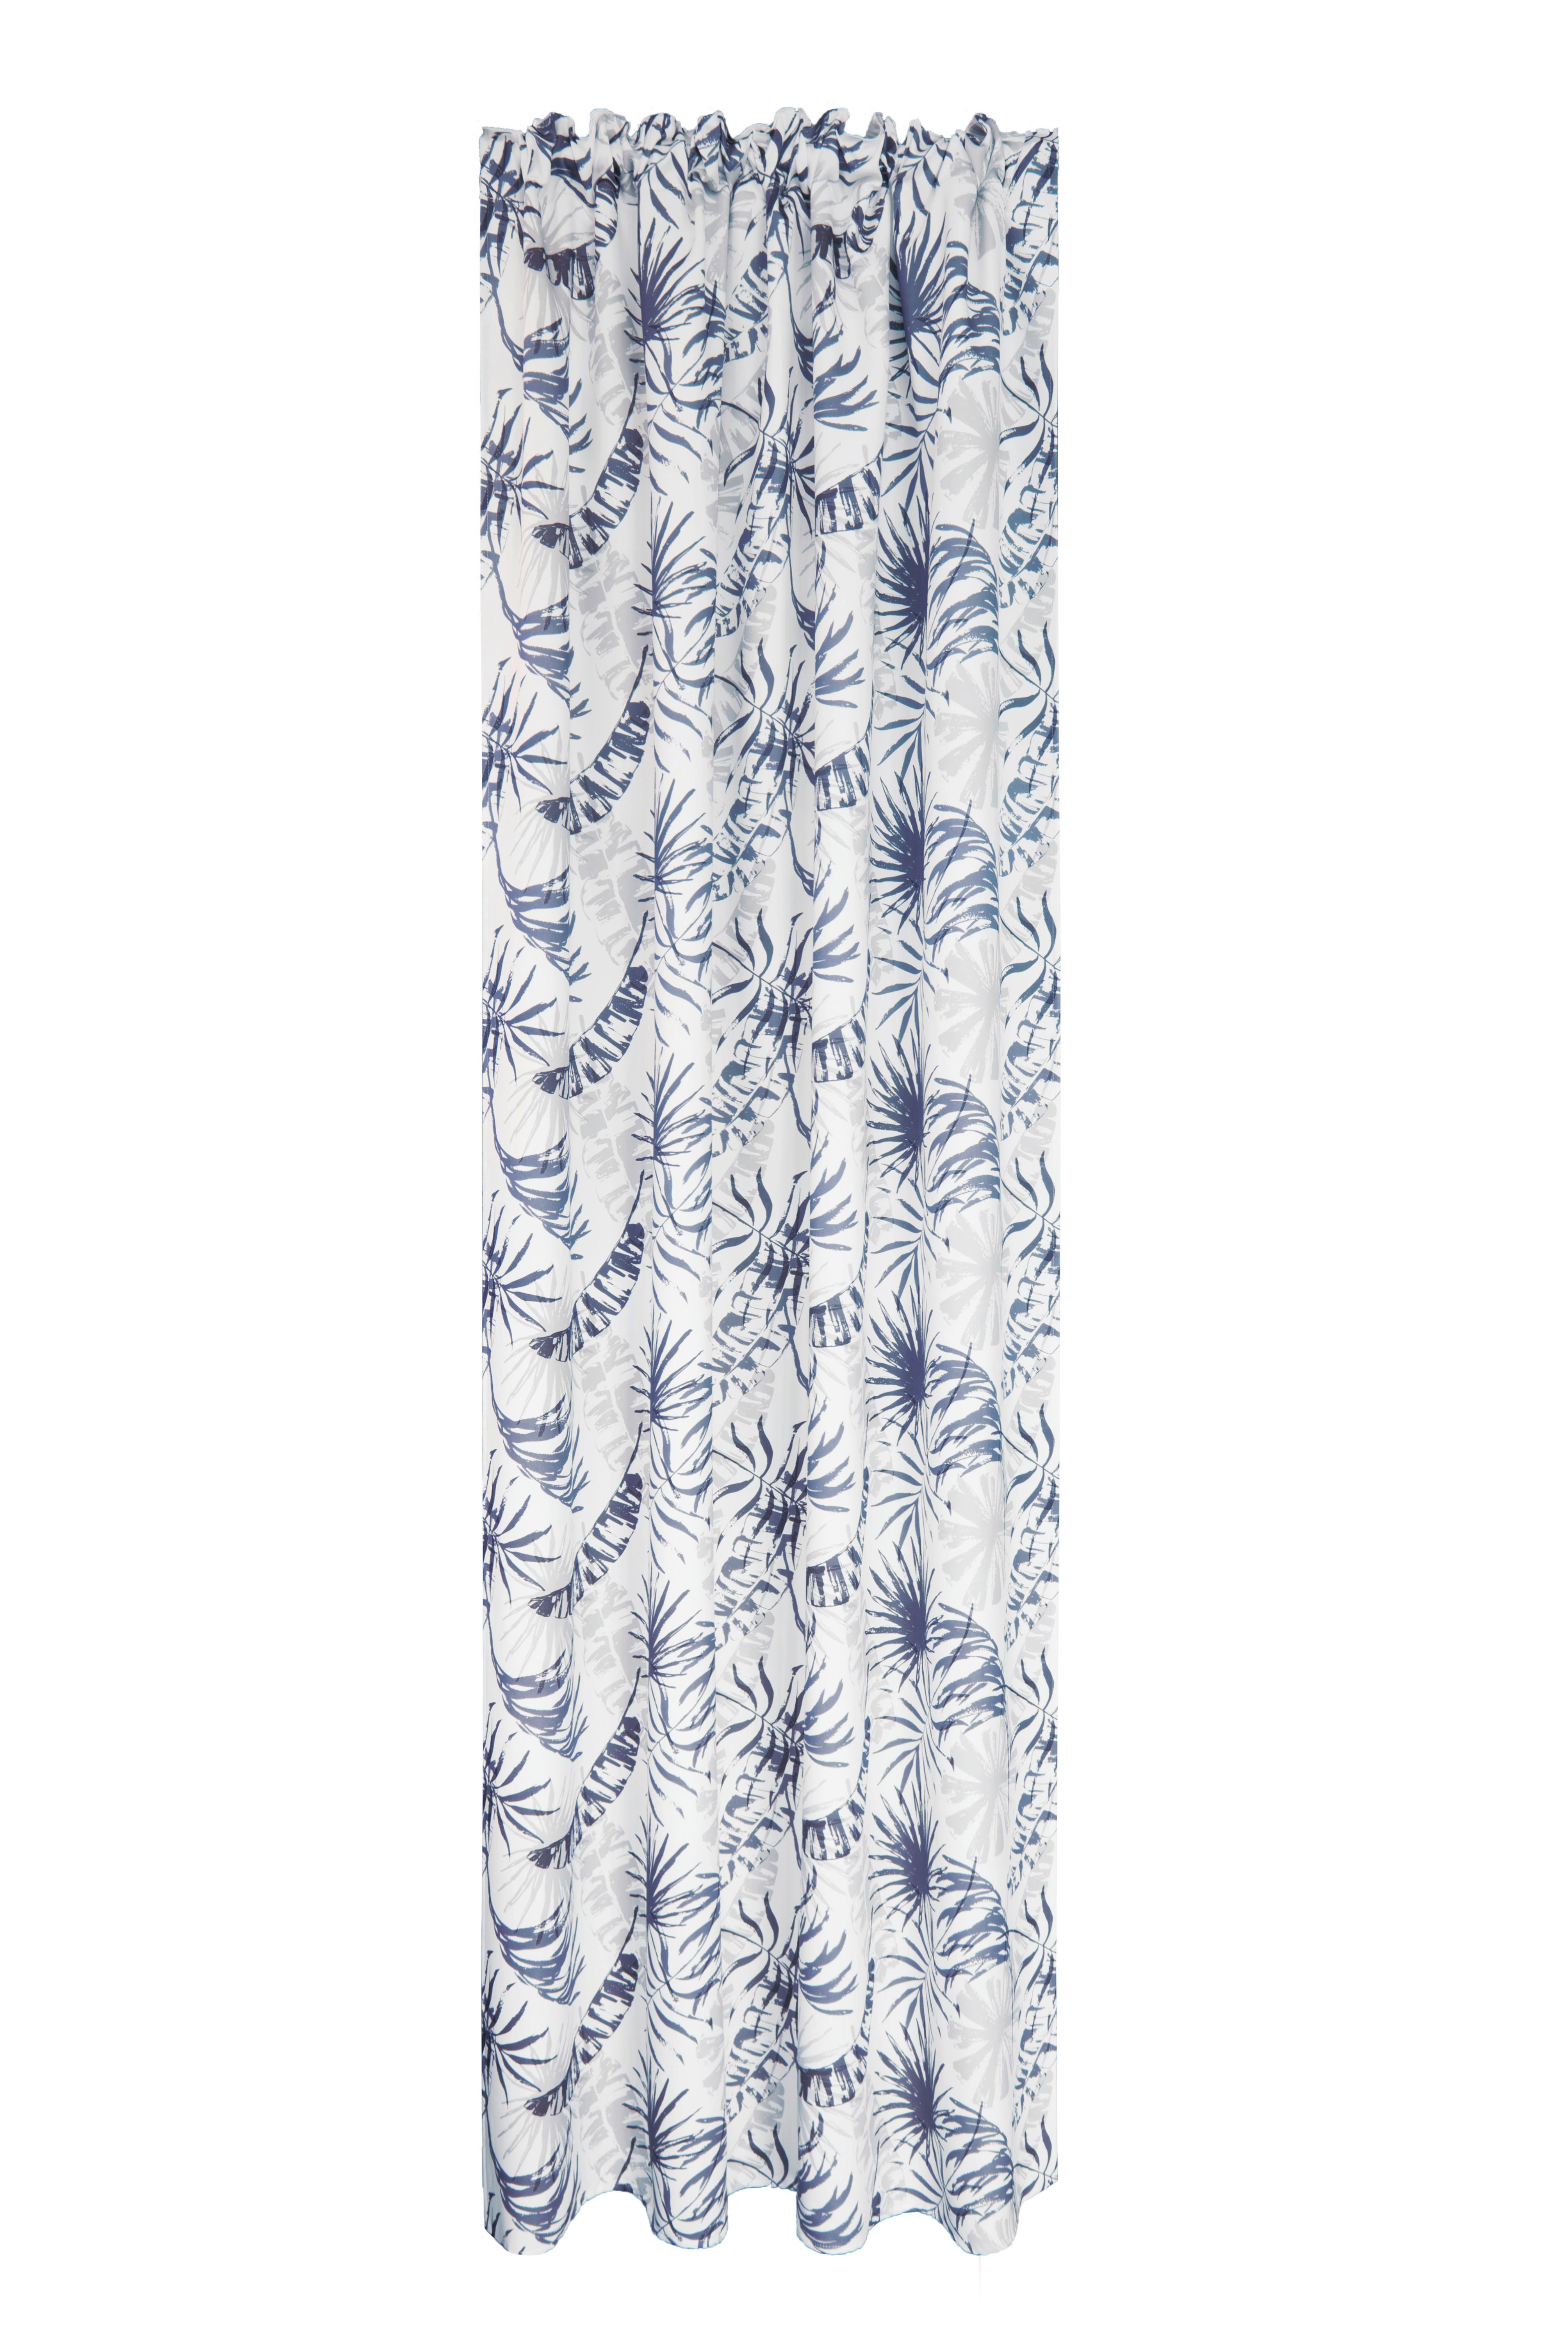 Készfüggöny Nele - Kék, romantikus/Landhaus, Textil (140/245cm) - James Wood